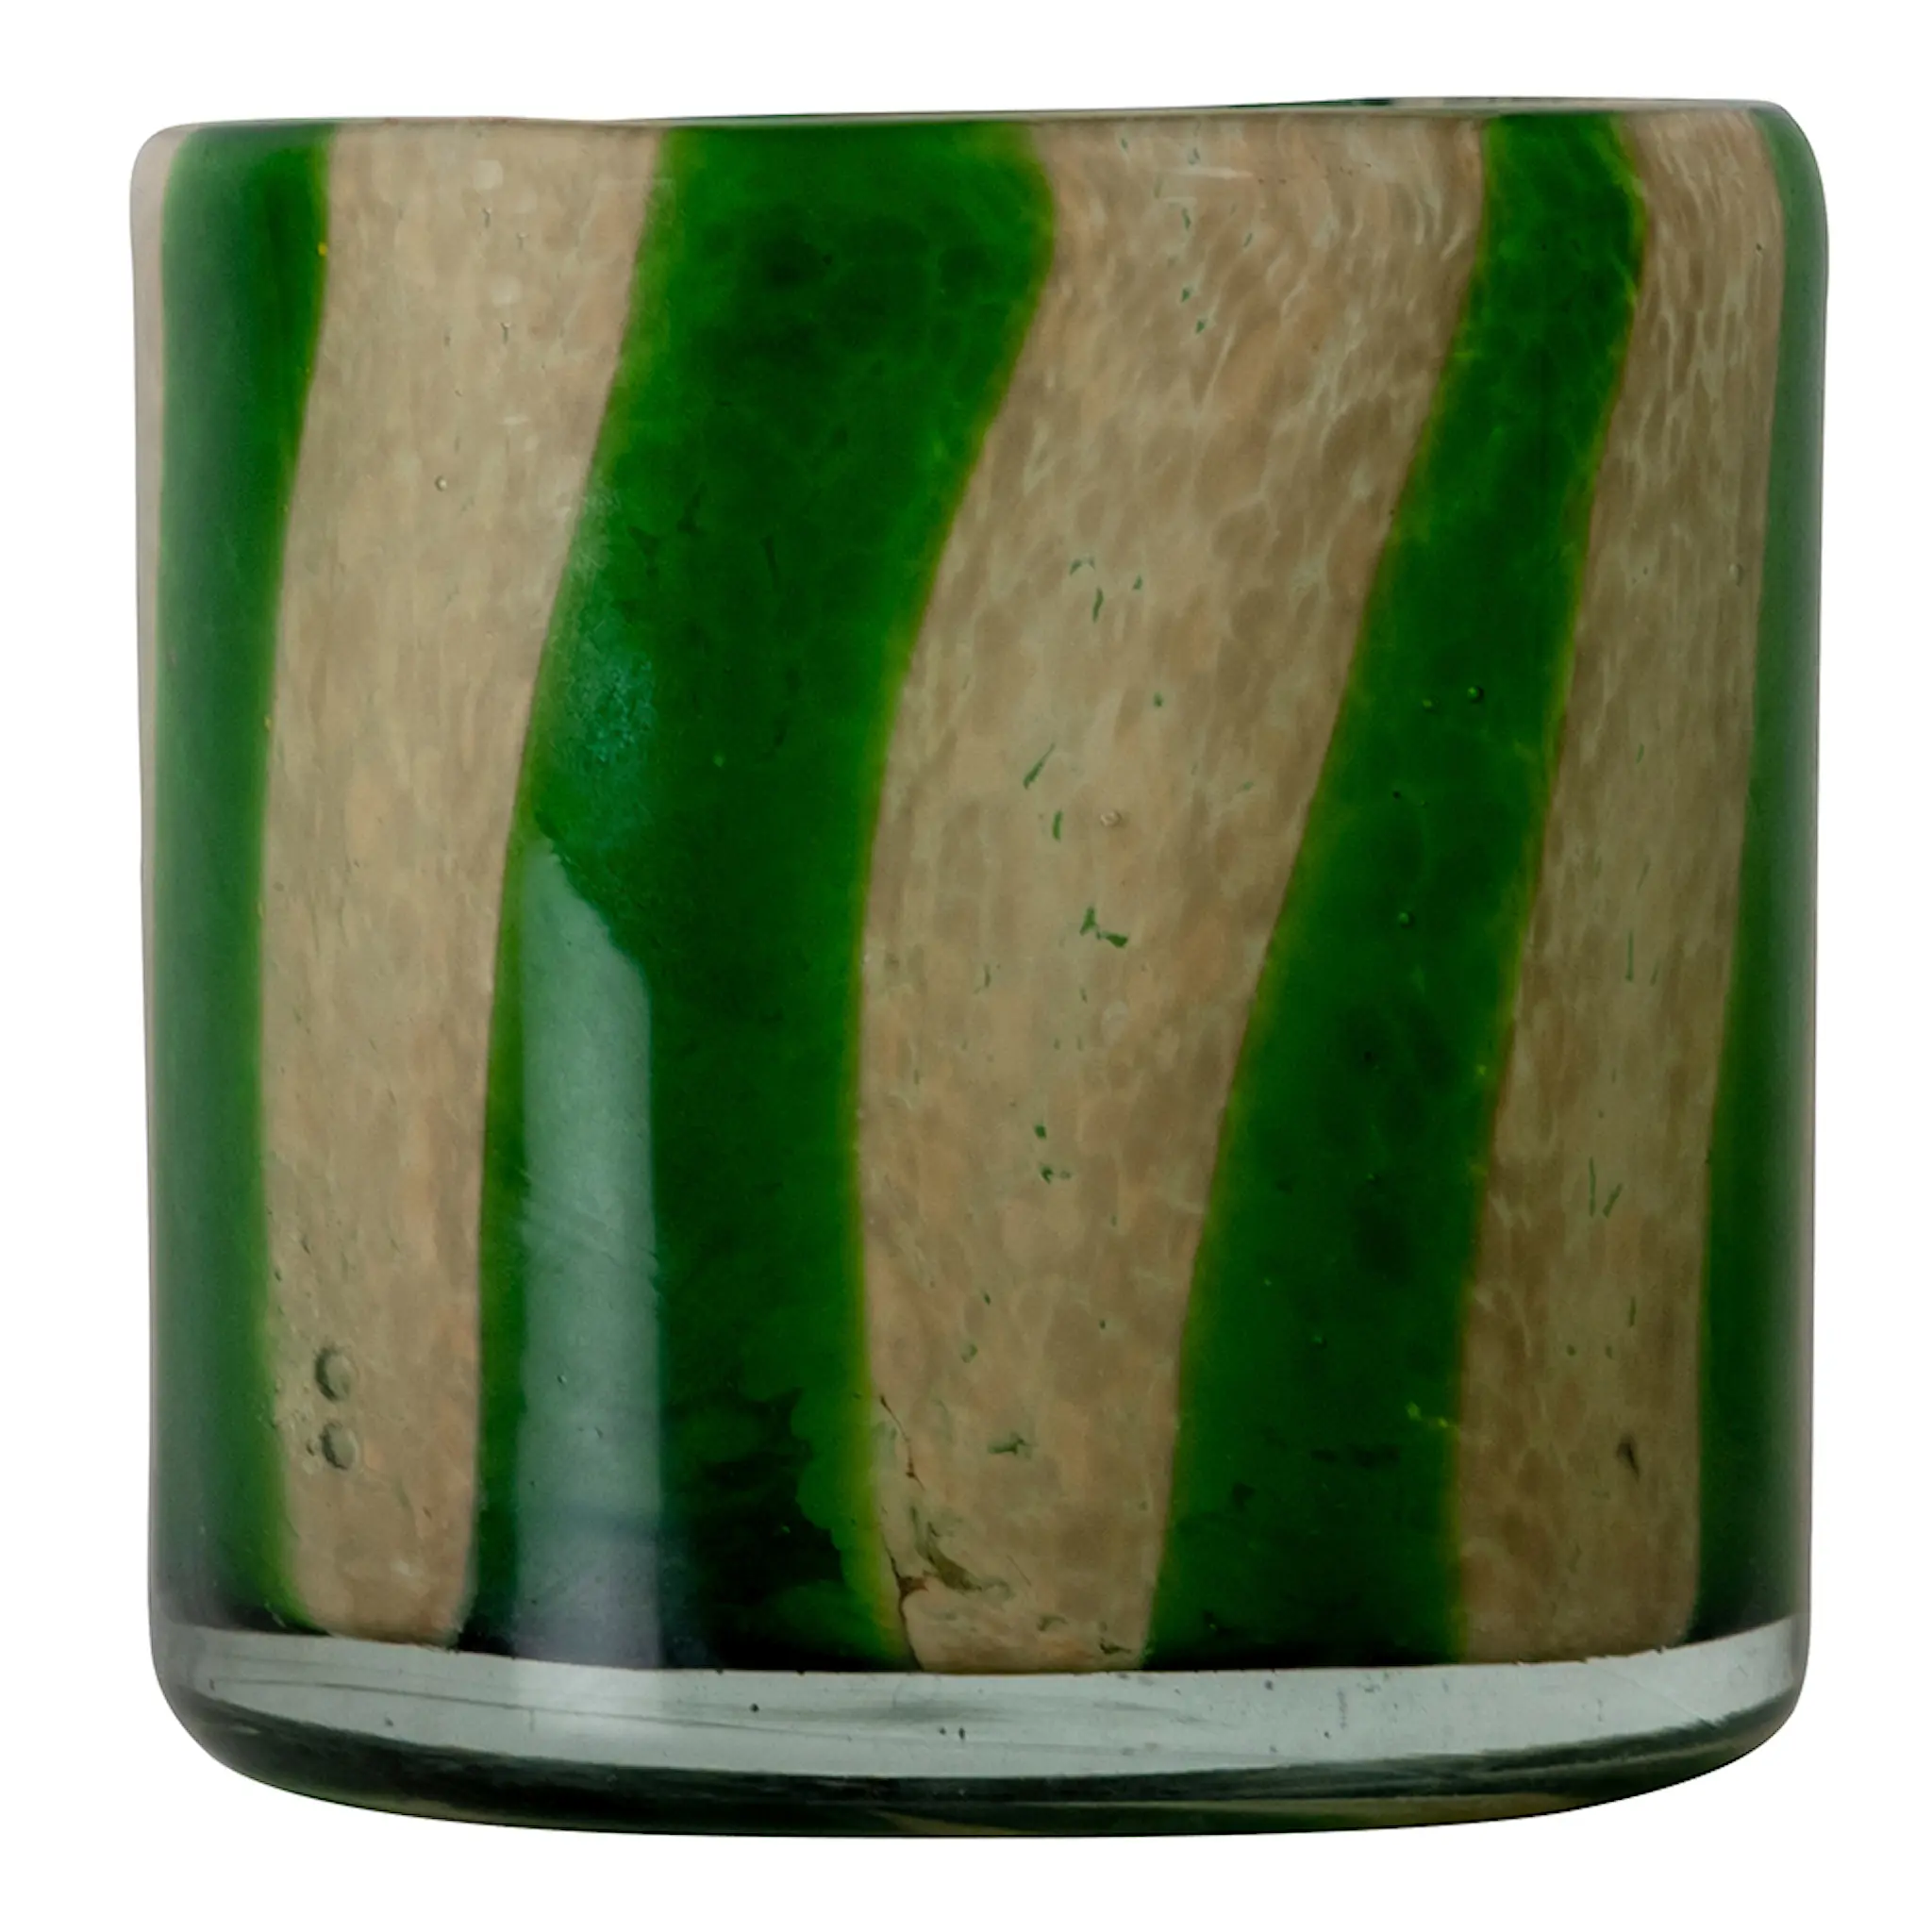 ByOn Calore lyslykt 10x10 cm Curve grønn/beige stripete